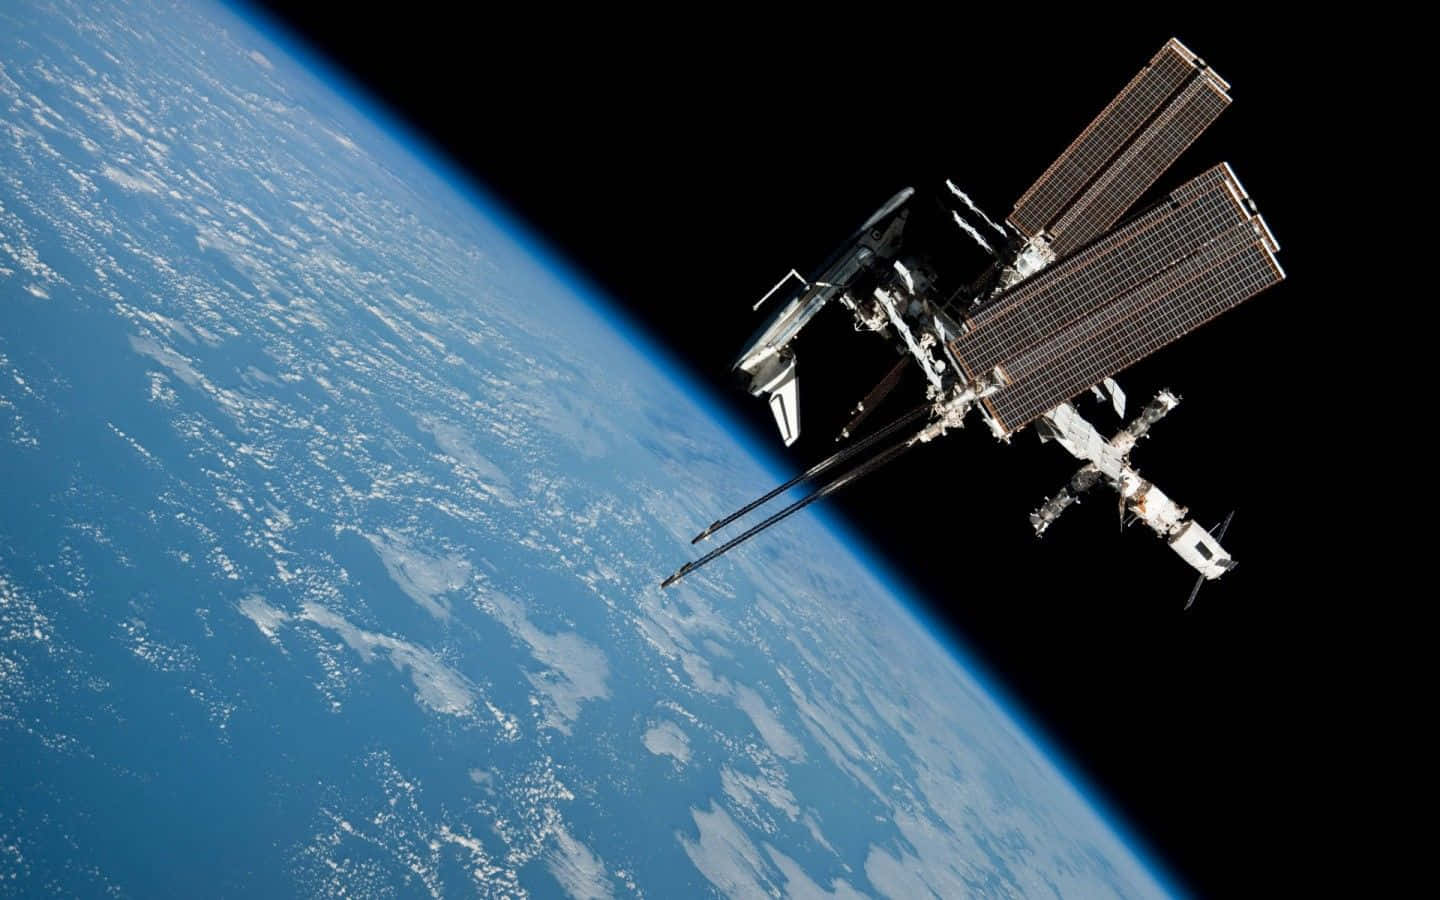 Laestación Espacial Internacional Se Observa Desde El Espacio.